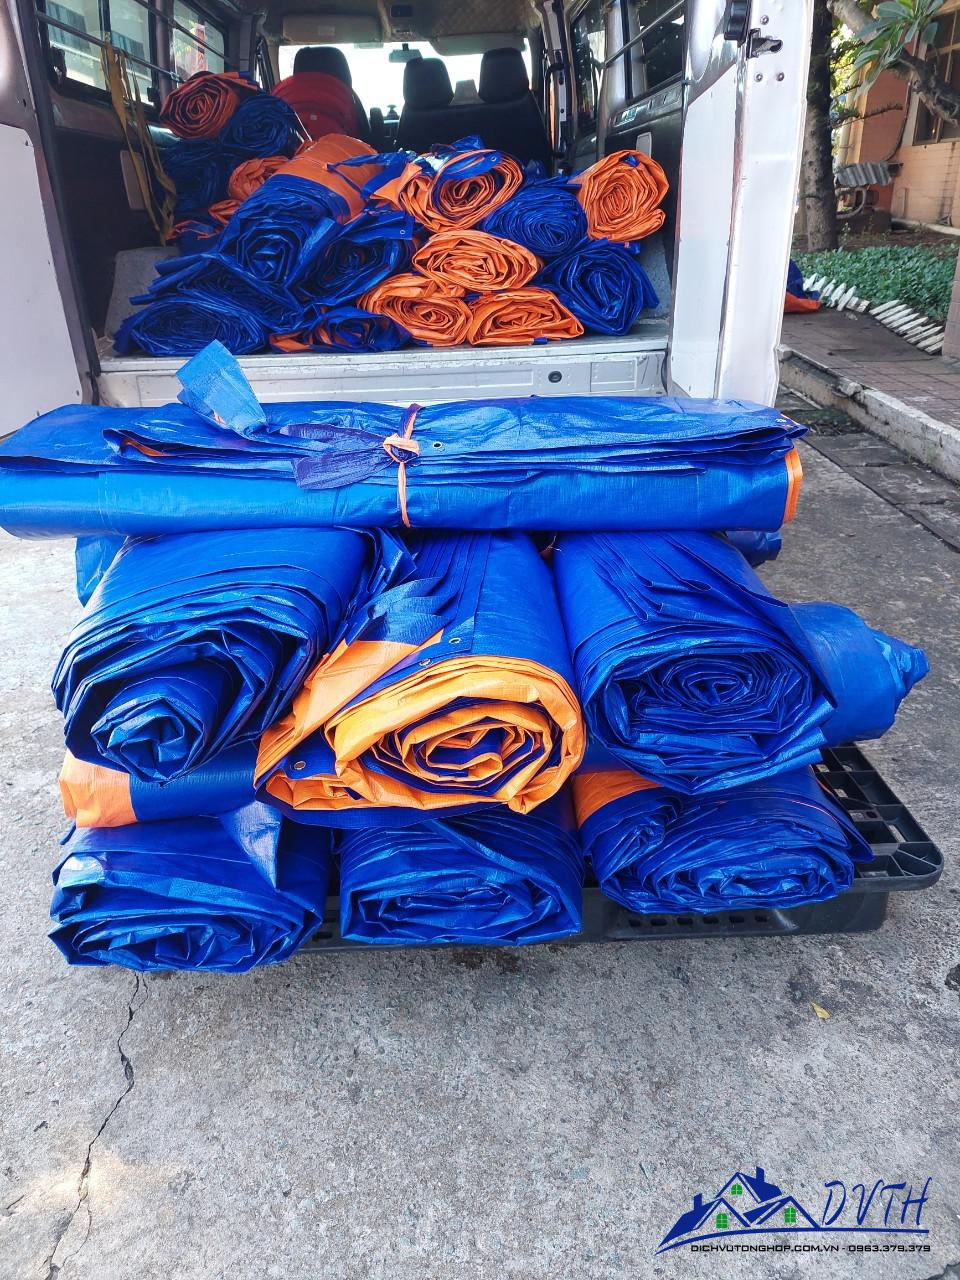 Bạt nhựa xanh cam tại Hưng Yên